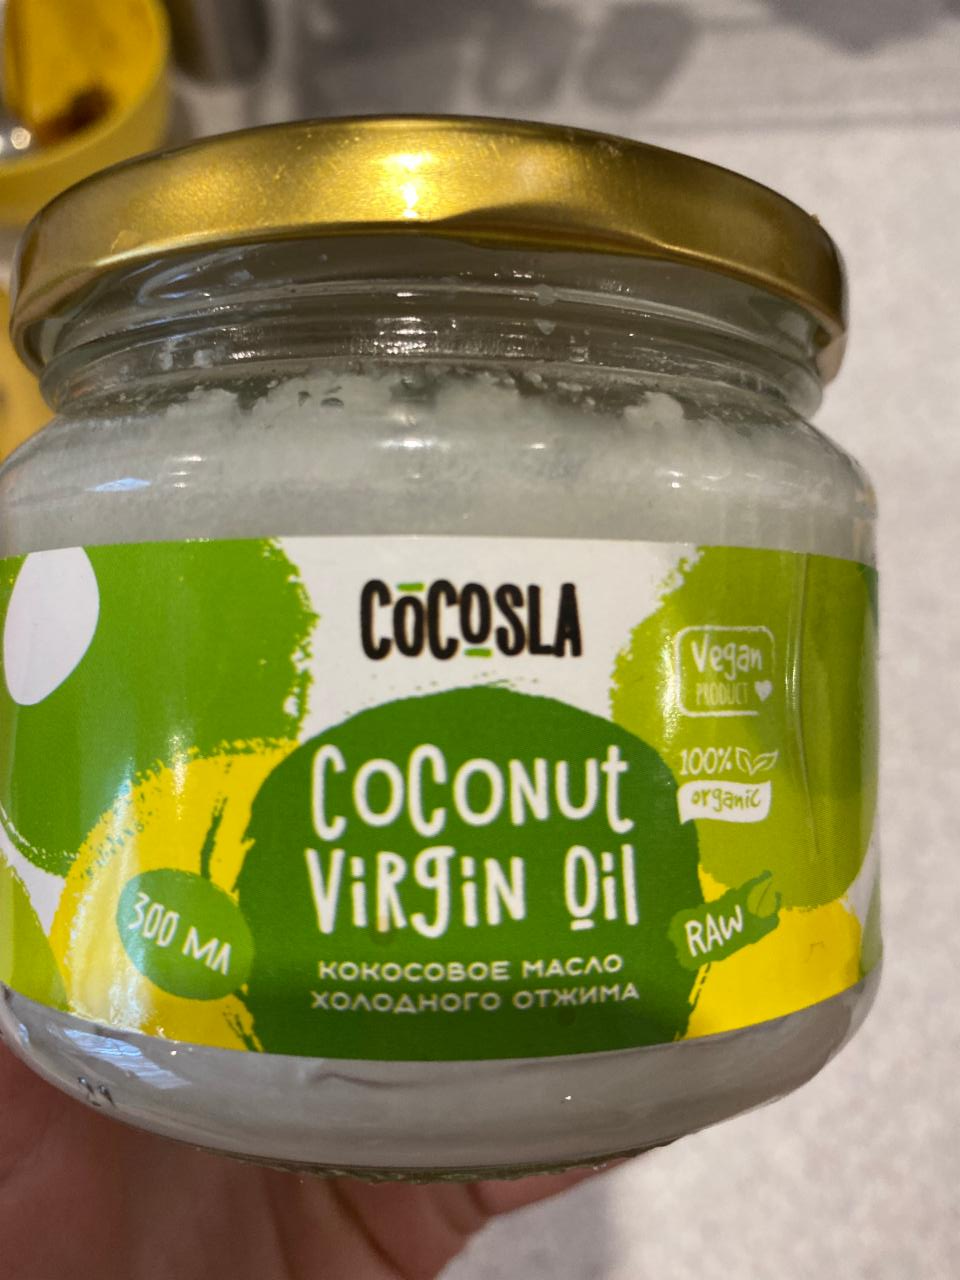 Фото - Кокосовое масло нерафинированное Coconut virgin oil Cocosla